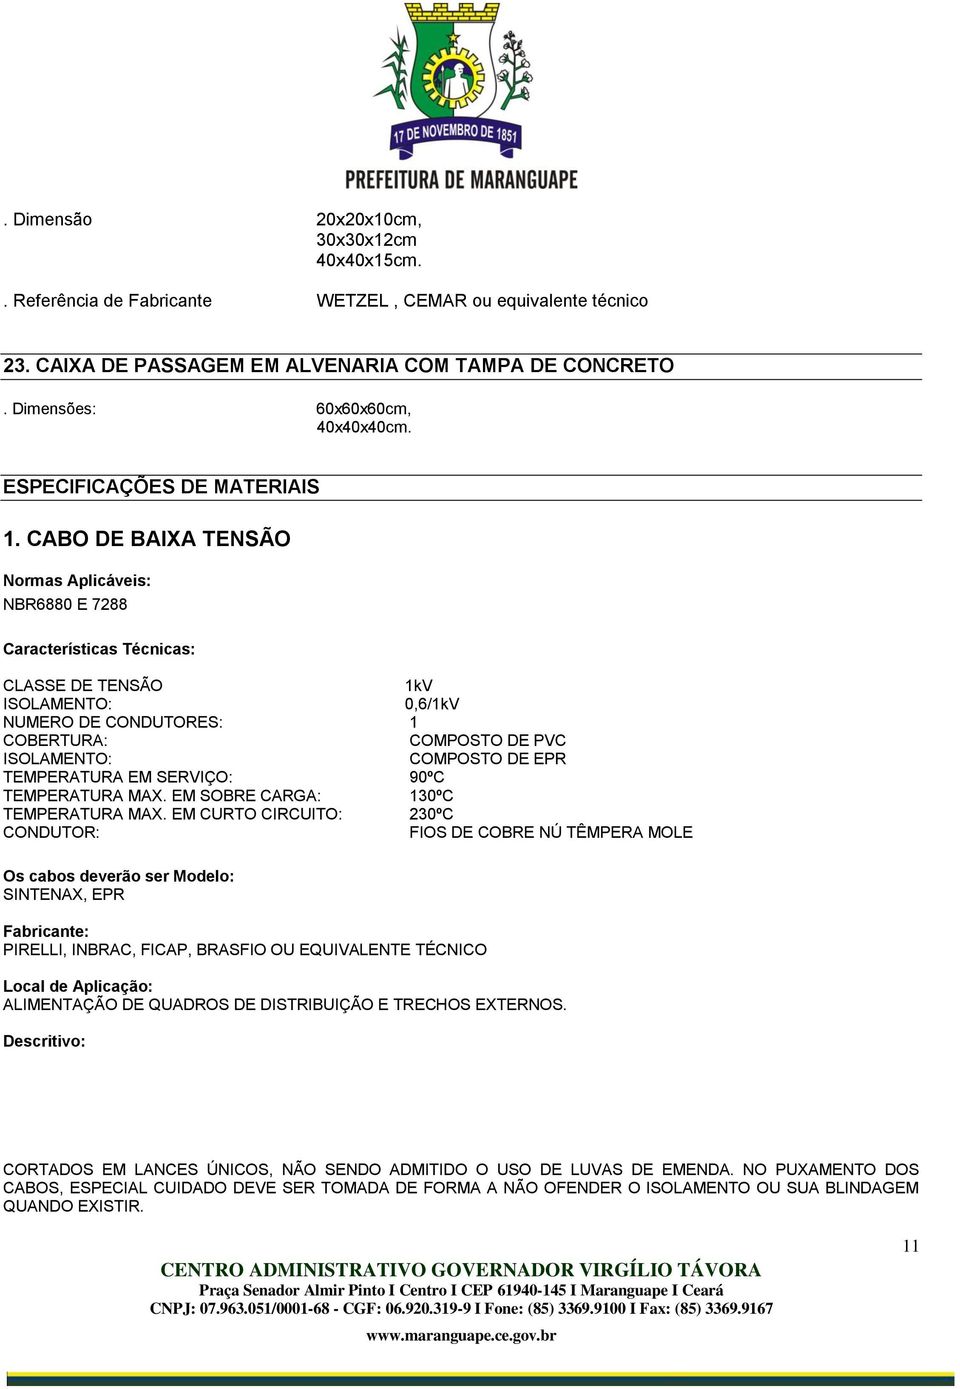 CABO DE BAIXA TENSÃO Normas Aplicáveis: NBR6880 E 7288 Características Técnicas: CLASSE DE TENSÃO 1kV ISOLAMENTO: 0,6/1kV NUMERO DE CONDUTORES: 1 COBERTURA: COMPOSTO DE PVC ISOLAMENTO: COMPOSTO DE